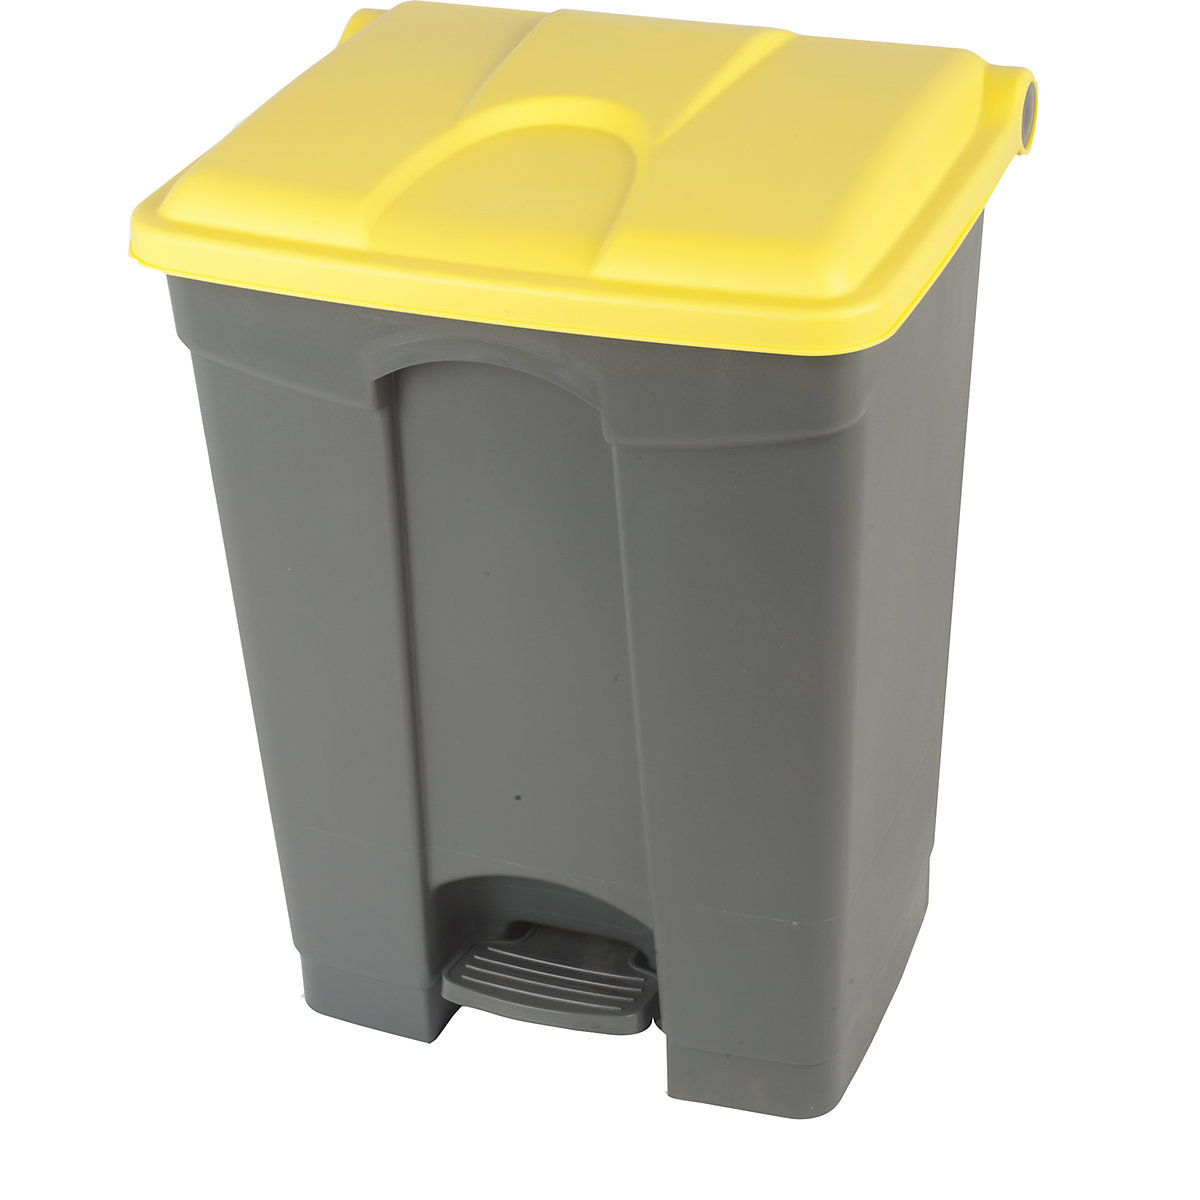 EUROKRAFTbasic – Nádoba na odpad s pedálem, objem 70 l, š x v x h 505 x 675 x 415 mm, šedá, žluté víko